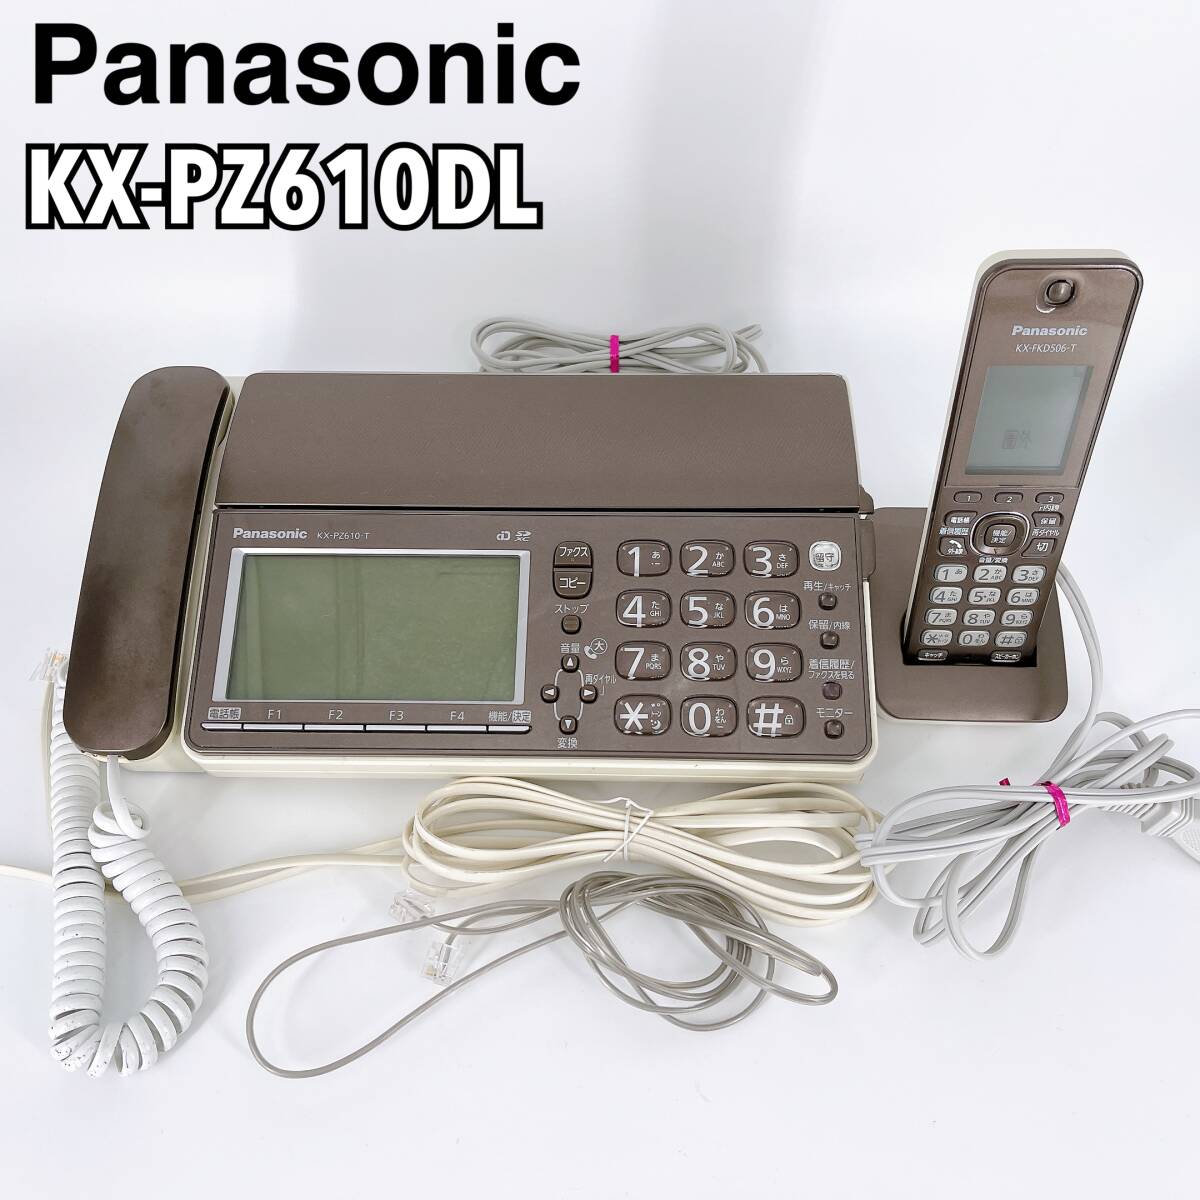 現状品 Panasonic パナソニック KX-PZ610DL 子機付き FAX電話機 おたっくす デジタルコードレス ファックス 親機 ブラウン